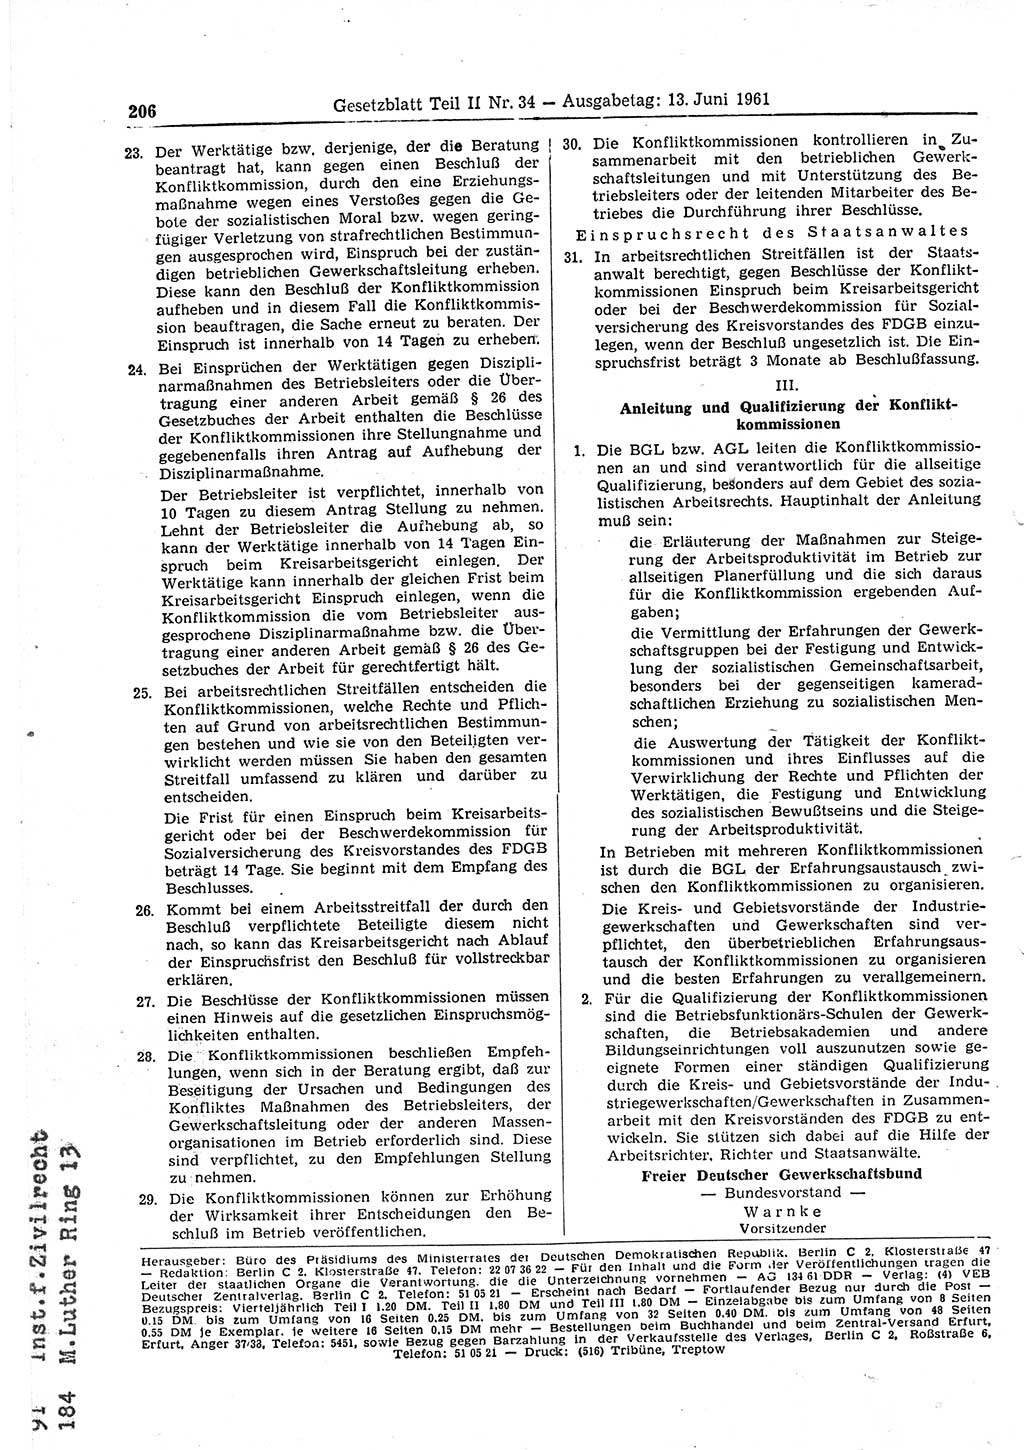 Gesetzblatt (GBl.) der Deutschen Demokratischen Republik (DDR) Teil ⅠⅠ 1961, Seite 206 (GBl. DDR ⅠⅠ 1961, S. 206)